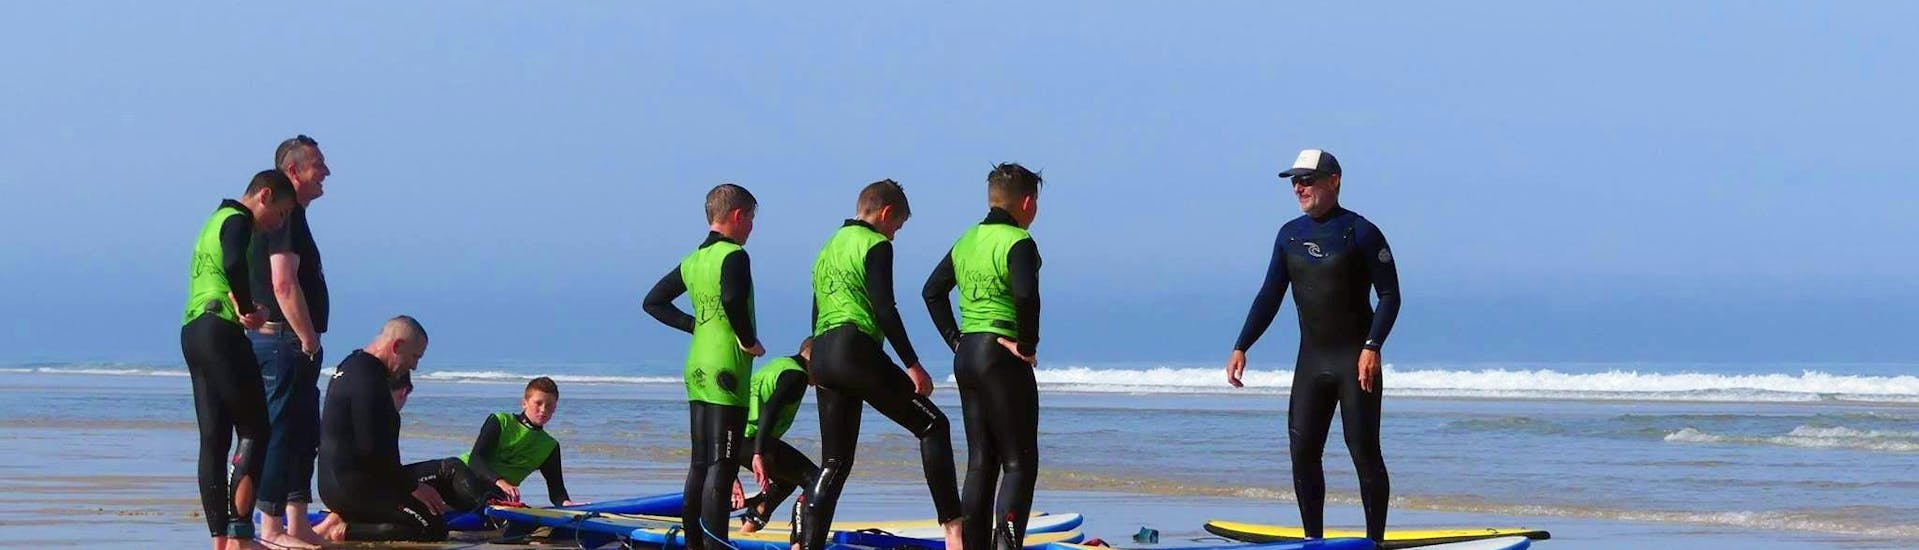 Surfers maken zich klaar voor hun surflessen (vanaf 9 jaar) op Messanges South Beach met Messanges Surf School.